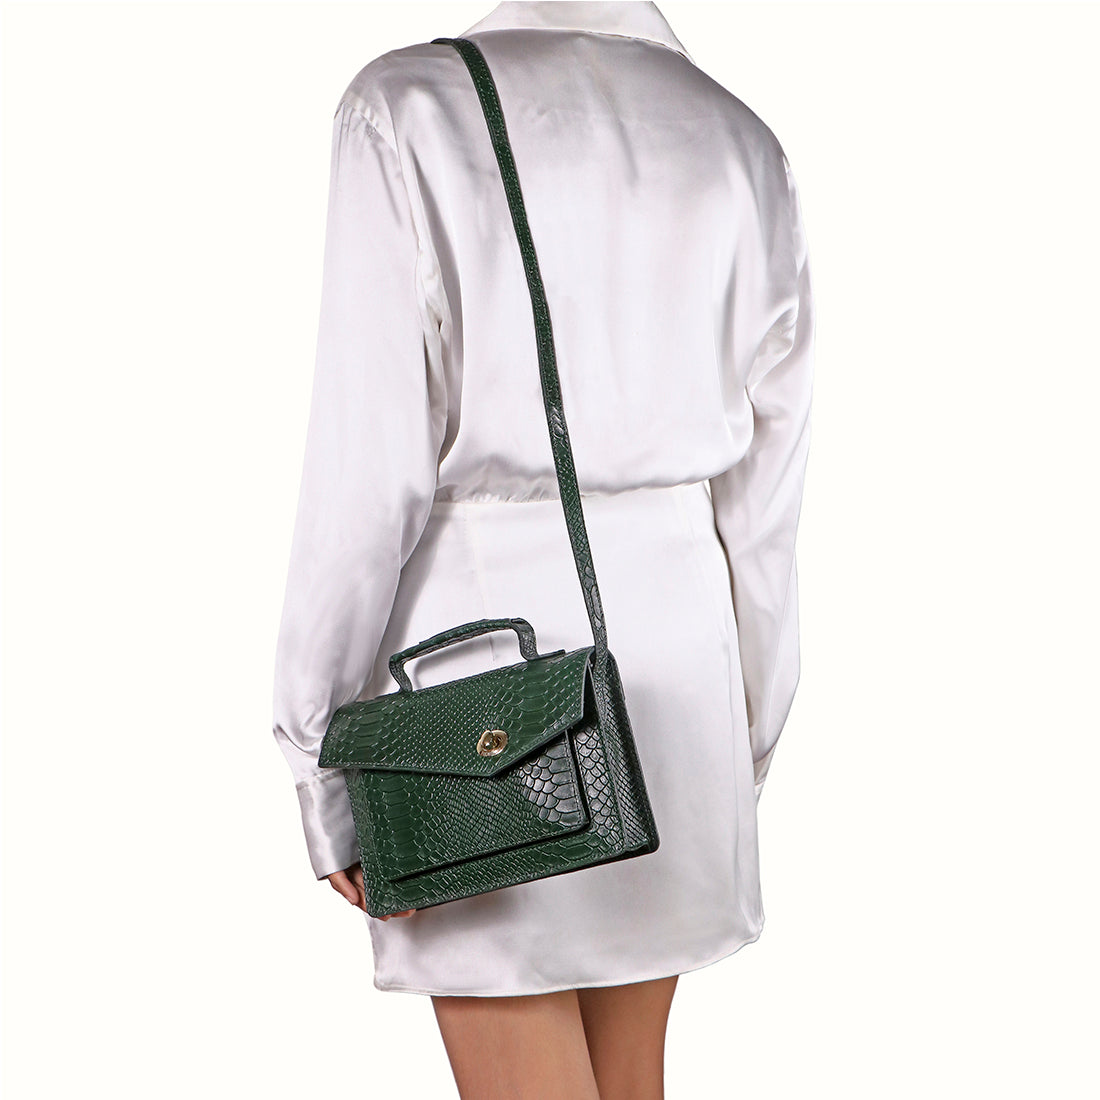 नवीनतम डिज़ाइन प्रतिकृति हैंडबैग लेडी लेदर स्मॉल स्क्वेयर पर्स के साथ लोगो  - चीन डिजाइनर फैशन हैंडबैग यह है ब्रांड लक्जरी हैंडबैग कीमत